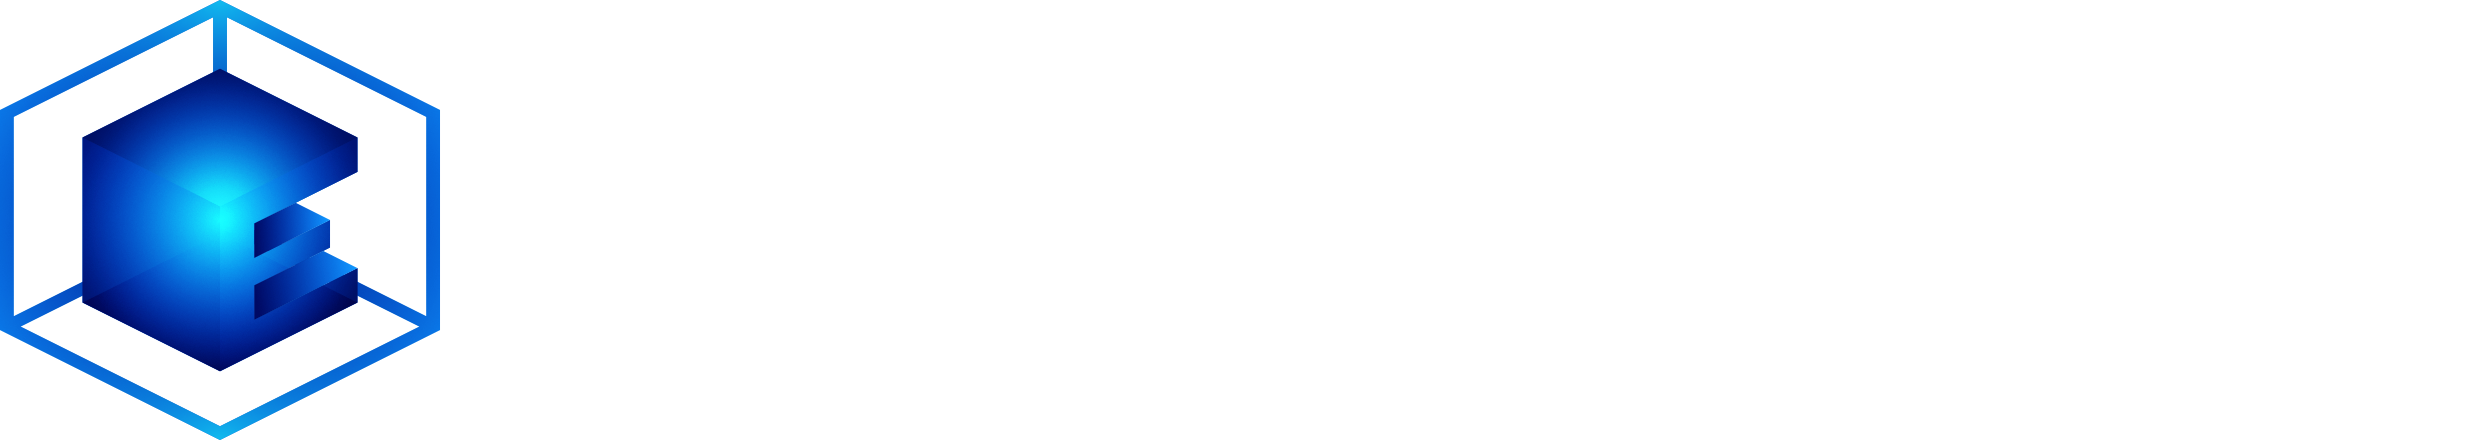 GC Logo Epicentral